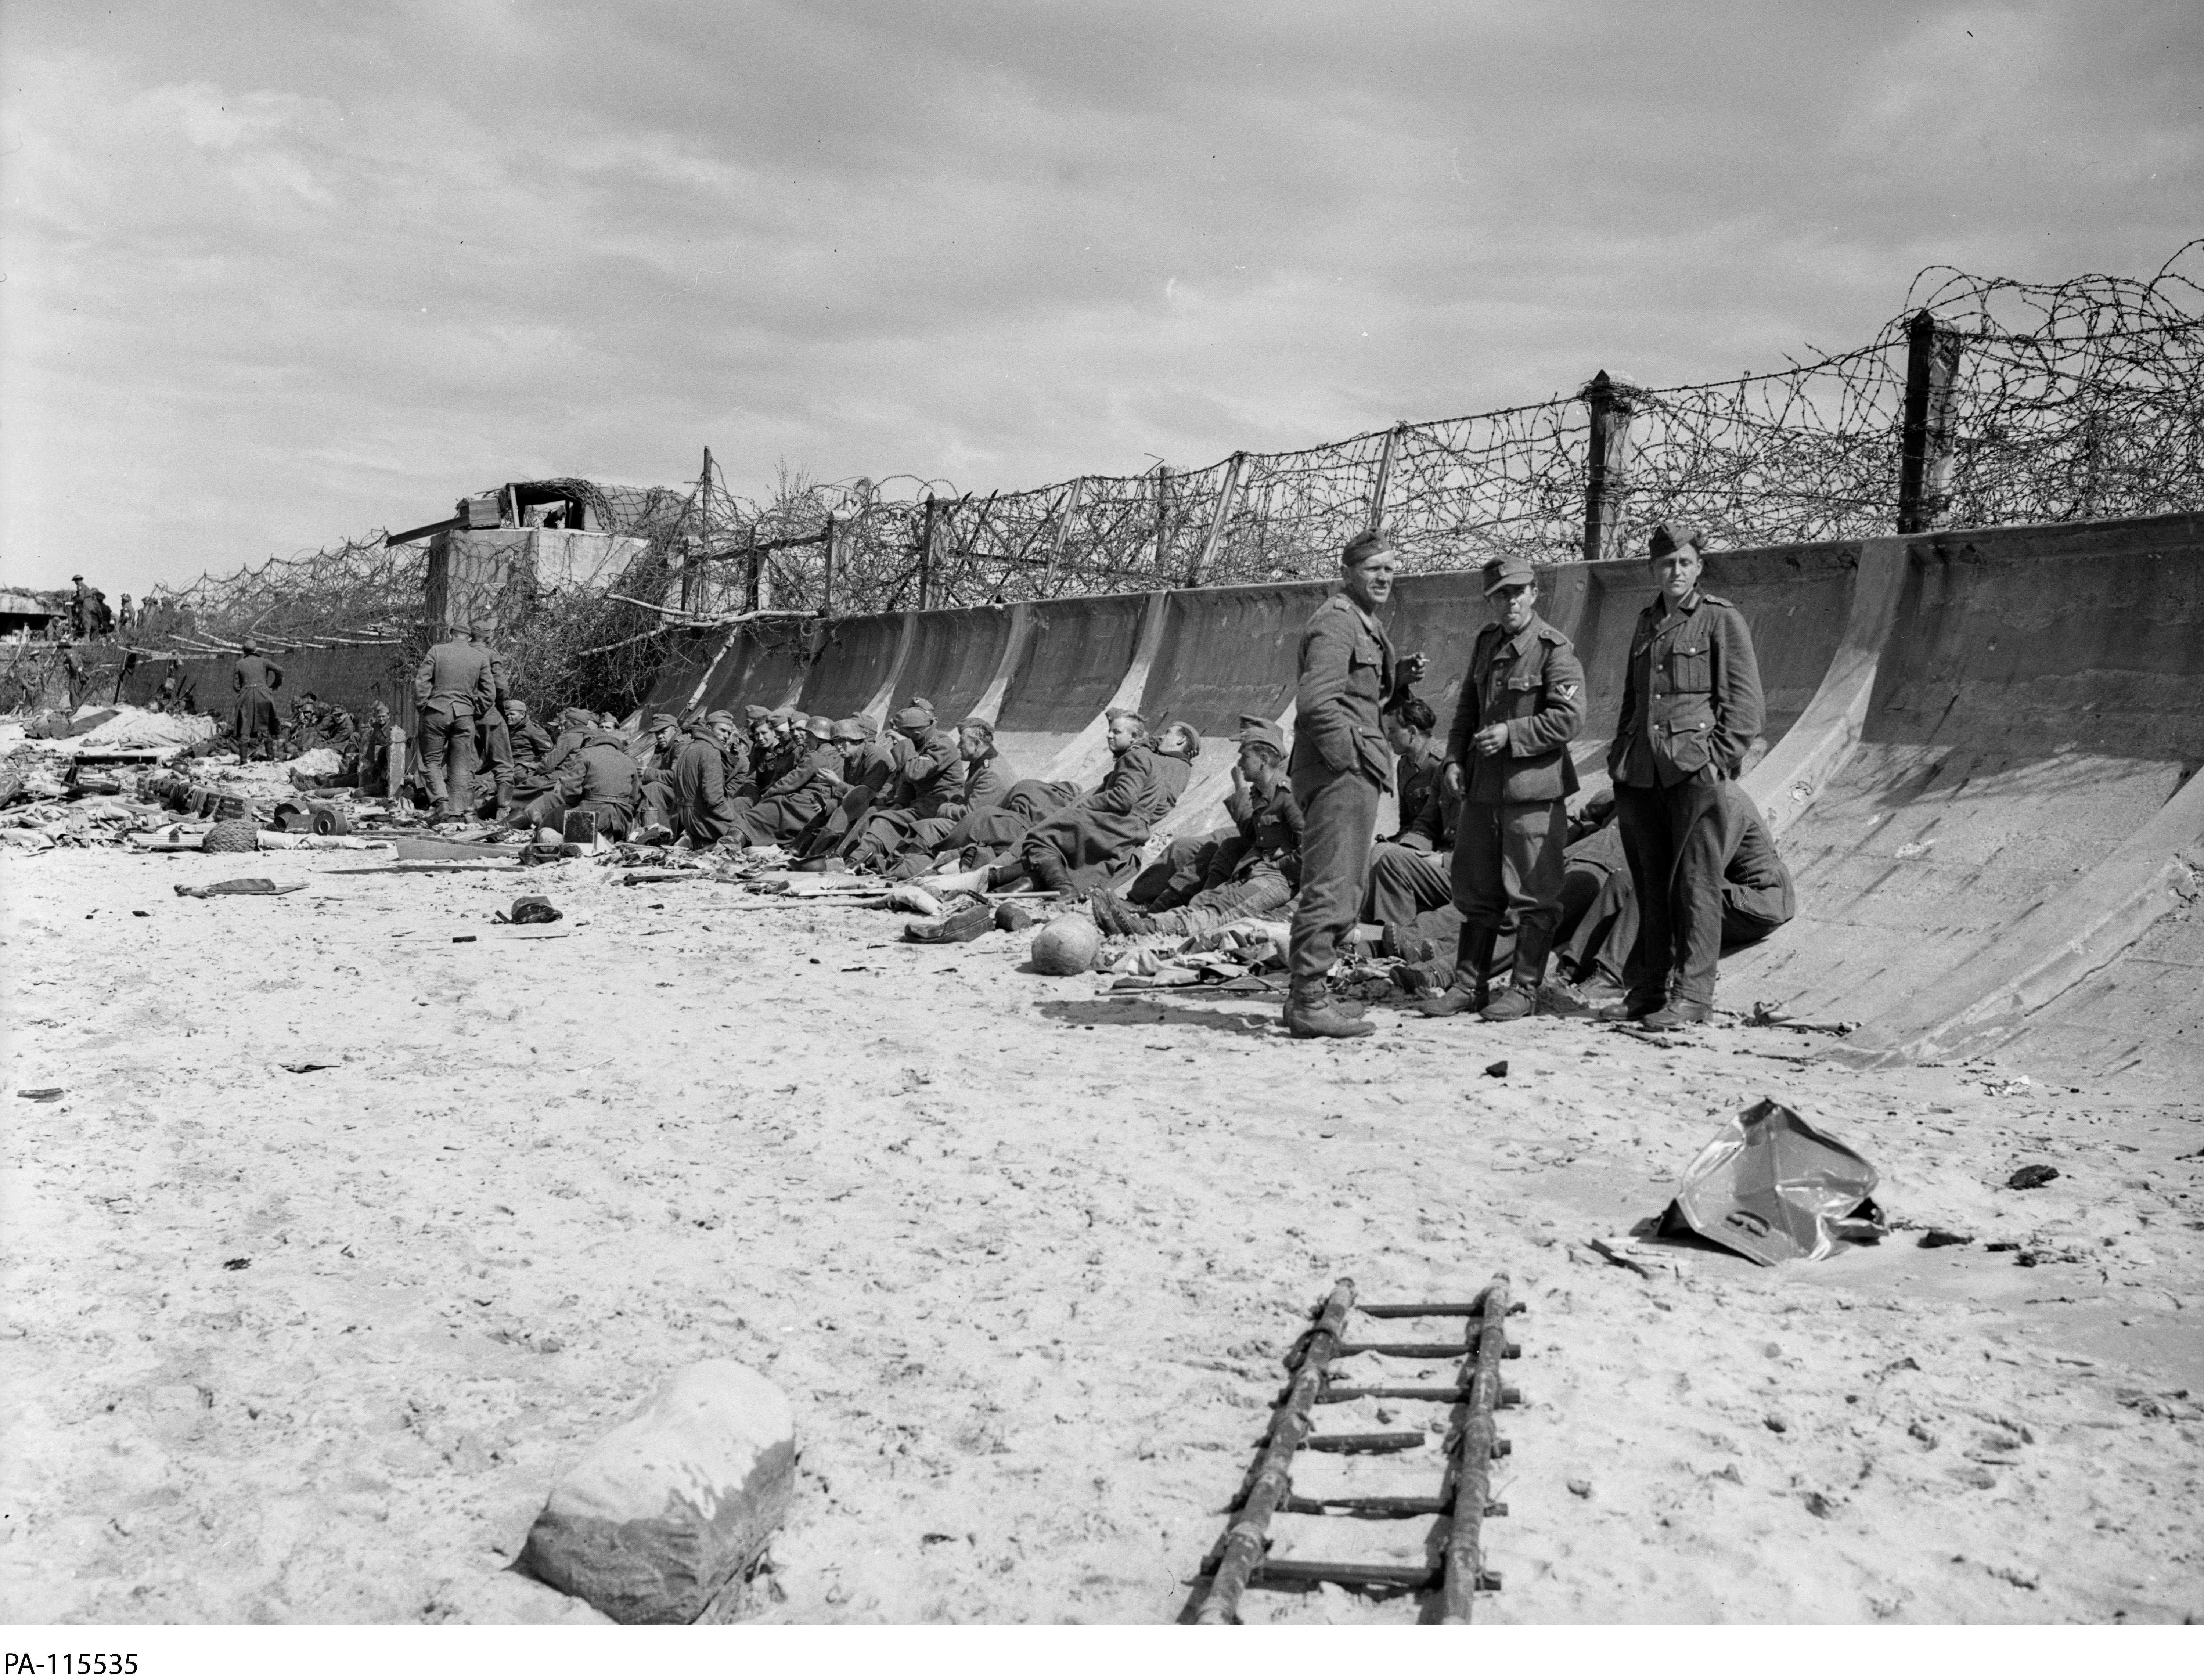 Photographie en noir et blanc – Une plage sablonneuse et une digue élevée, courbée et surmontée d'épais fils barbelés. Un nid de mitrailleuses est visible un peu plus loin sur la plage. Des prisonniers allemands sont assis contre la digue.